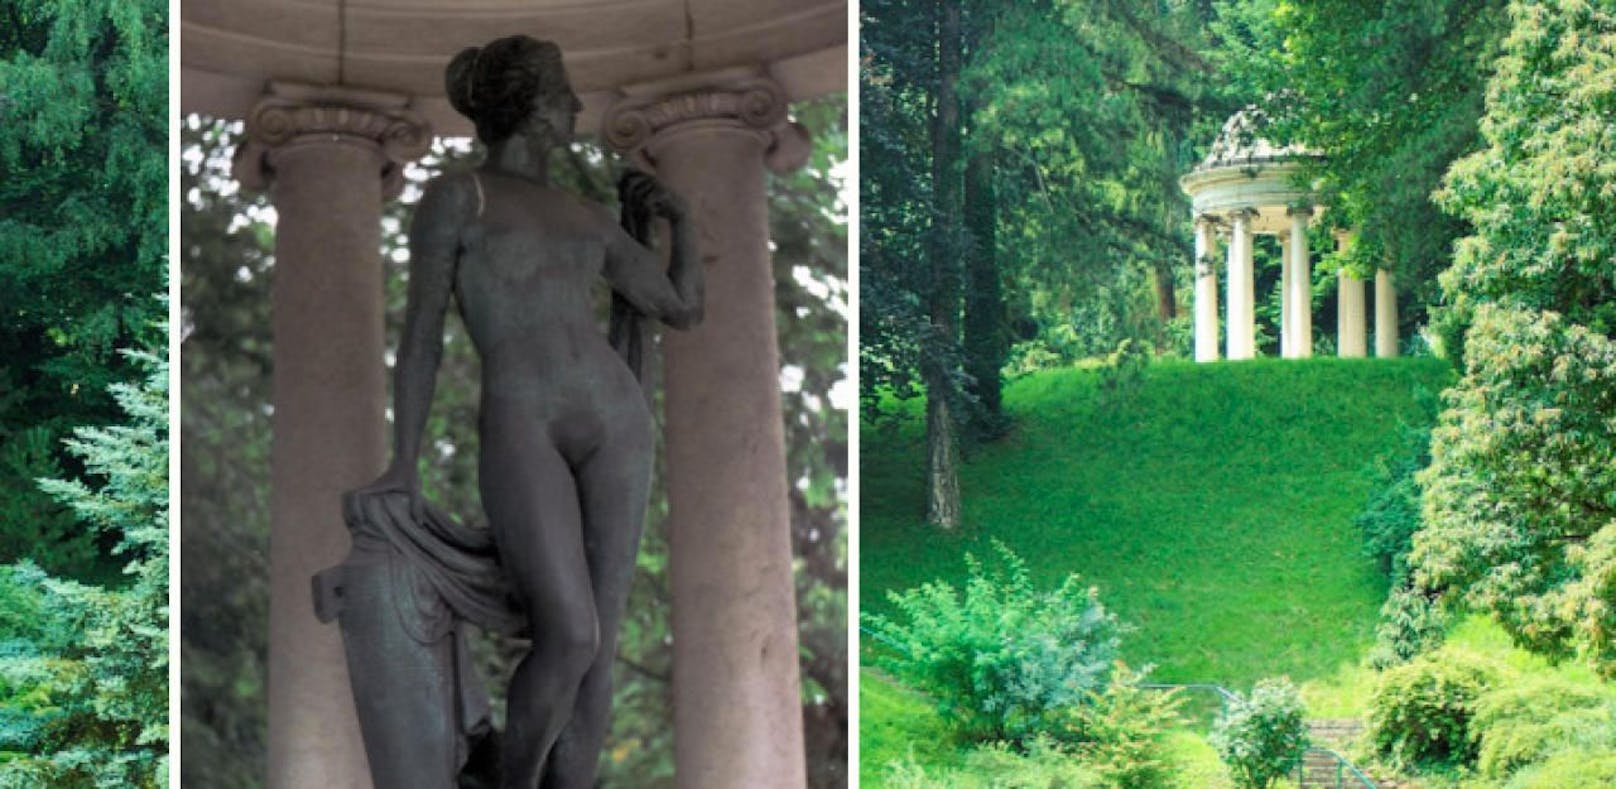 Die Aphrodite-Figur aus dem Pavillon im Bauernbergpark wird ins Museum kommen.